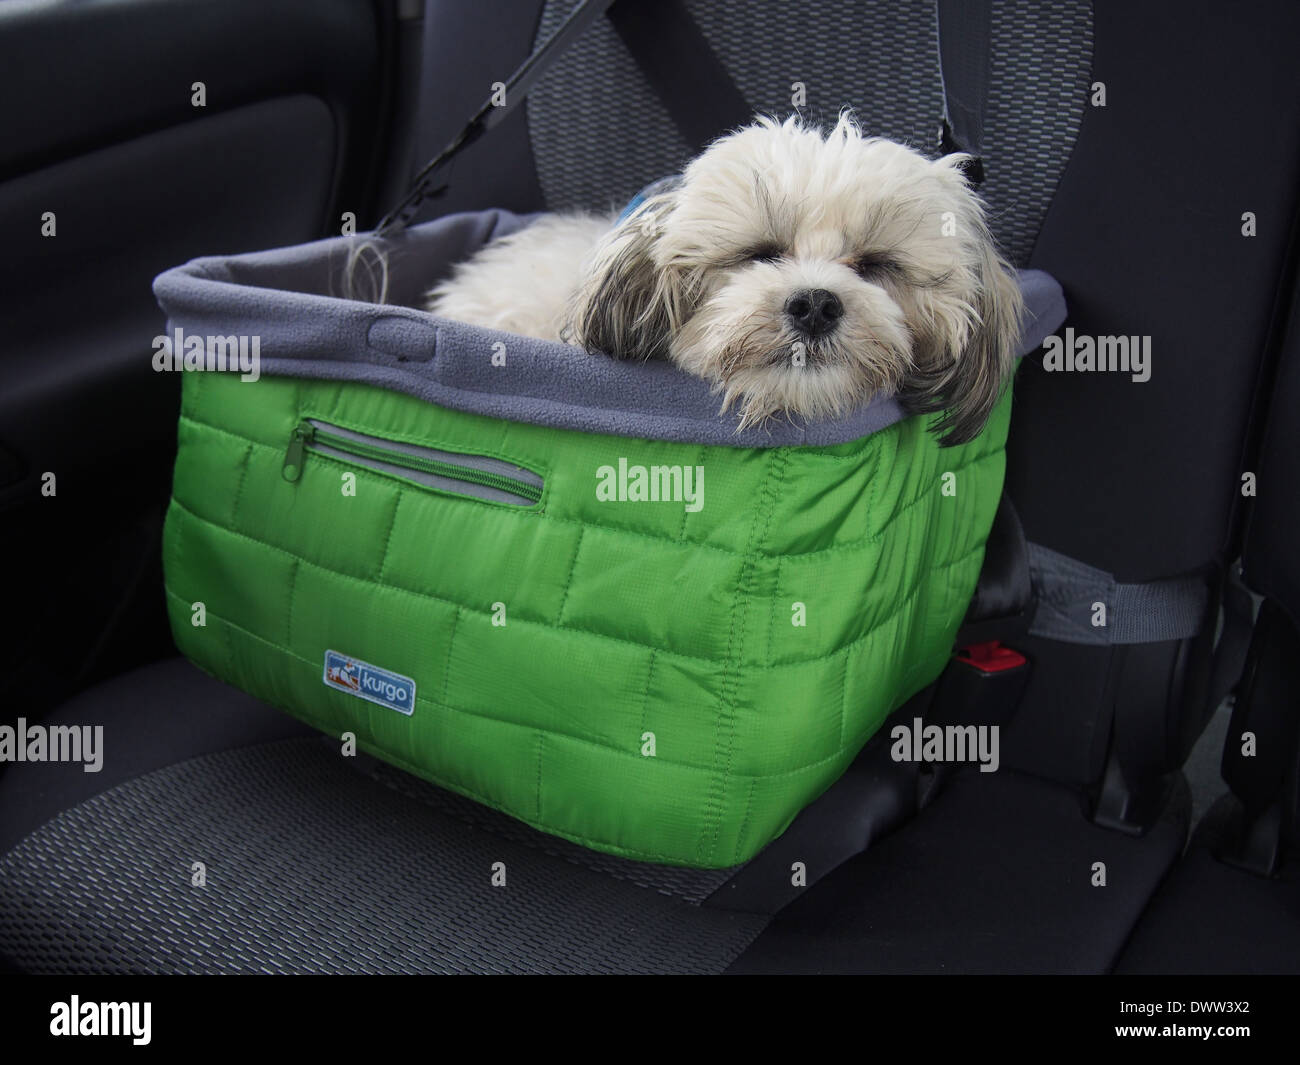 Verschlafene Shih Tzu Bichon Frise Mischling (a/k/a Zuchon oder Teddybär)  ist im Auto Sicherheit Korb, New York, USA gesichert Stockfotografie - Alamy